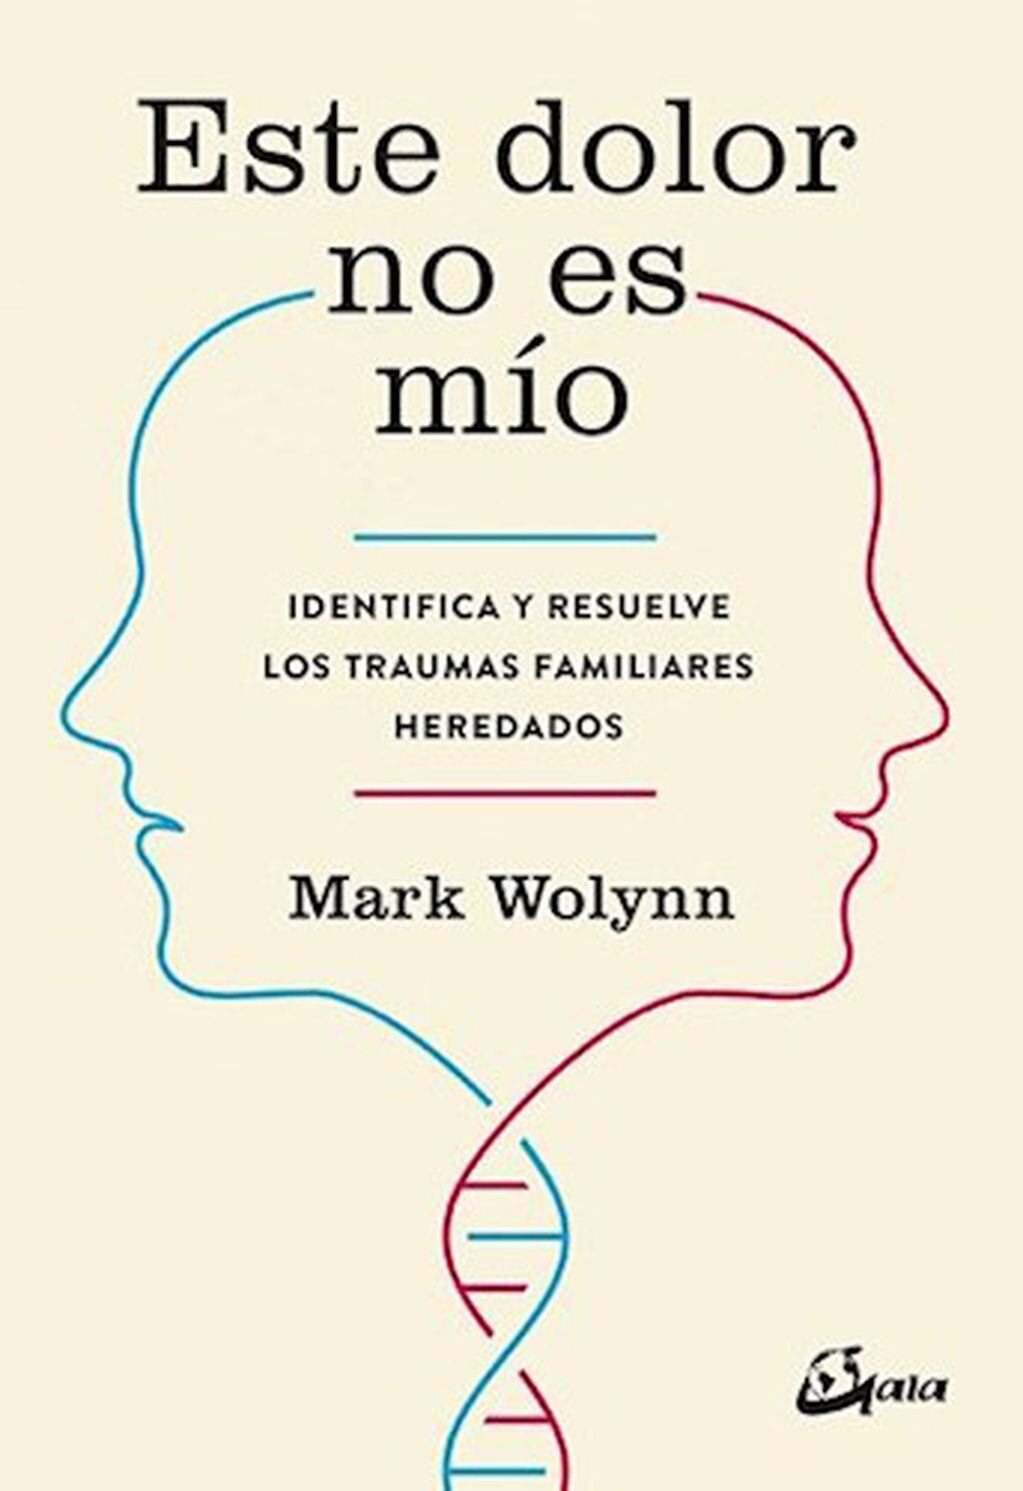 El terapeuta estadounidense Mark Wolynn, autor de "Este dolor no es mío", es fundador del Instituto de Constelaciones Familiares y pionero en el estudio de los traumas familiares heredados.